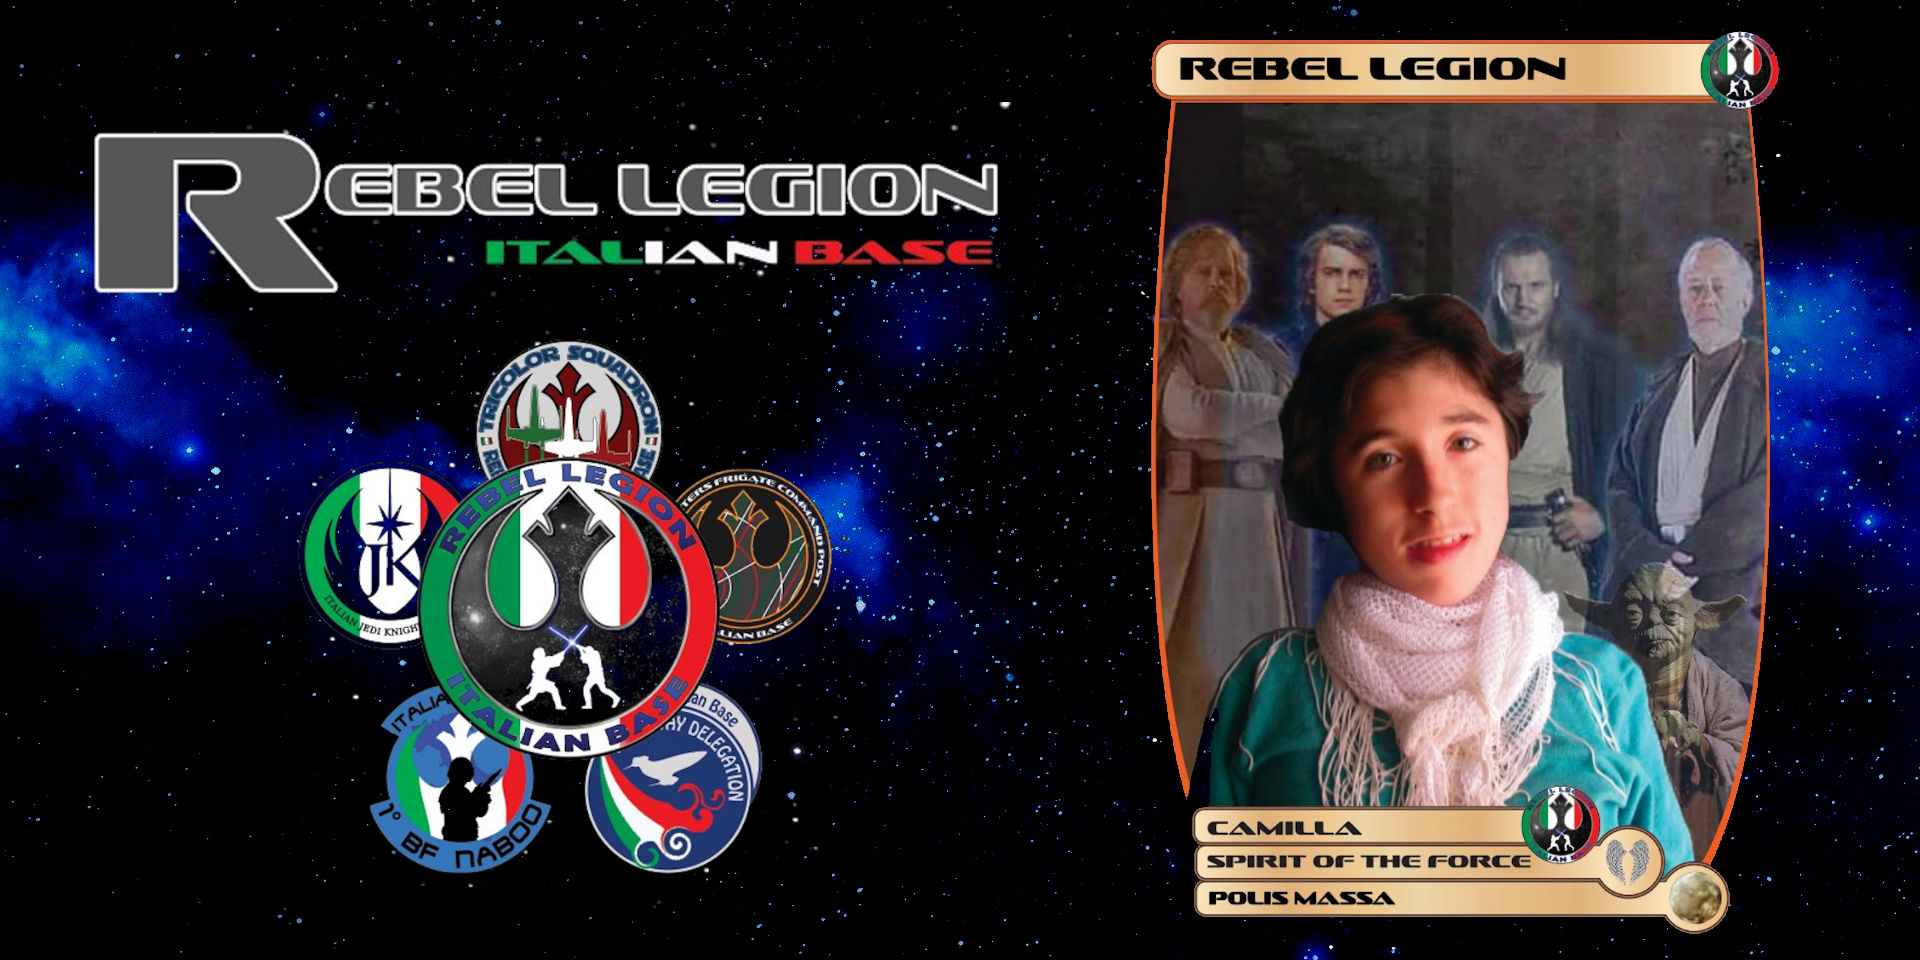 L’omaggio della Rebel Legion Italian Base a Camilla Crippa